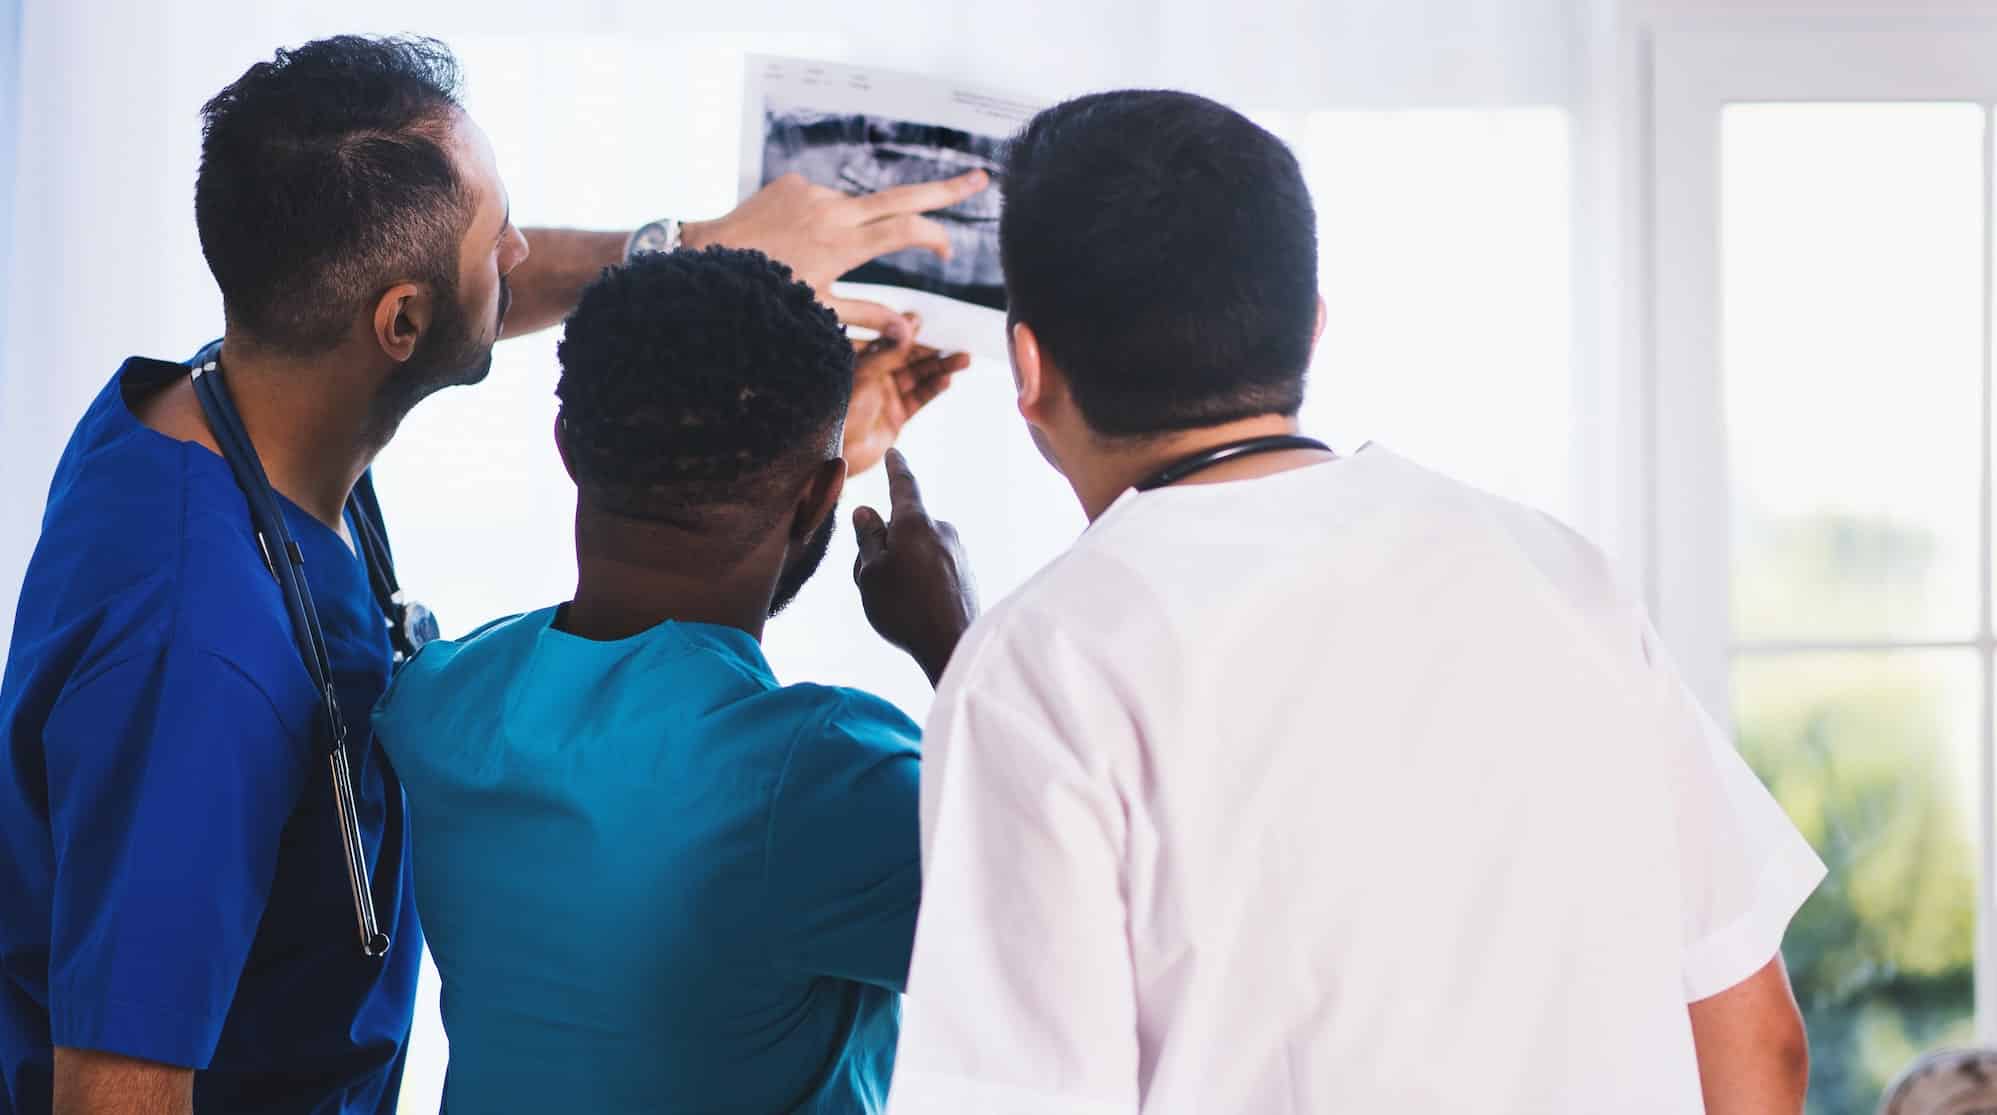 Understanding diversity - Nurse standing - men looking at x-ray